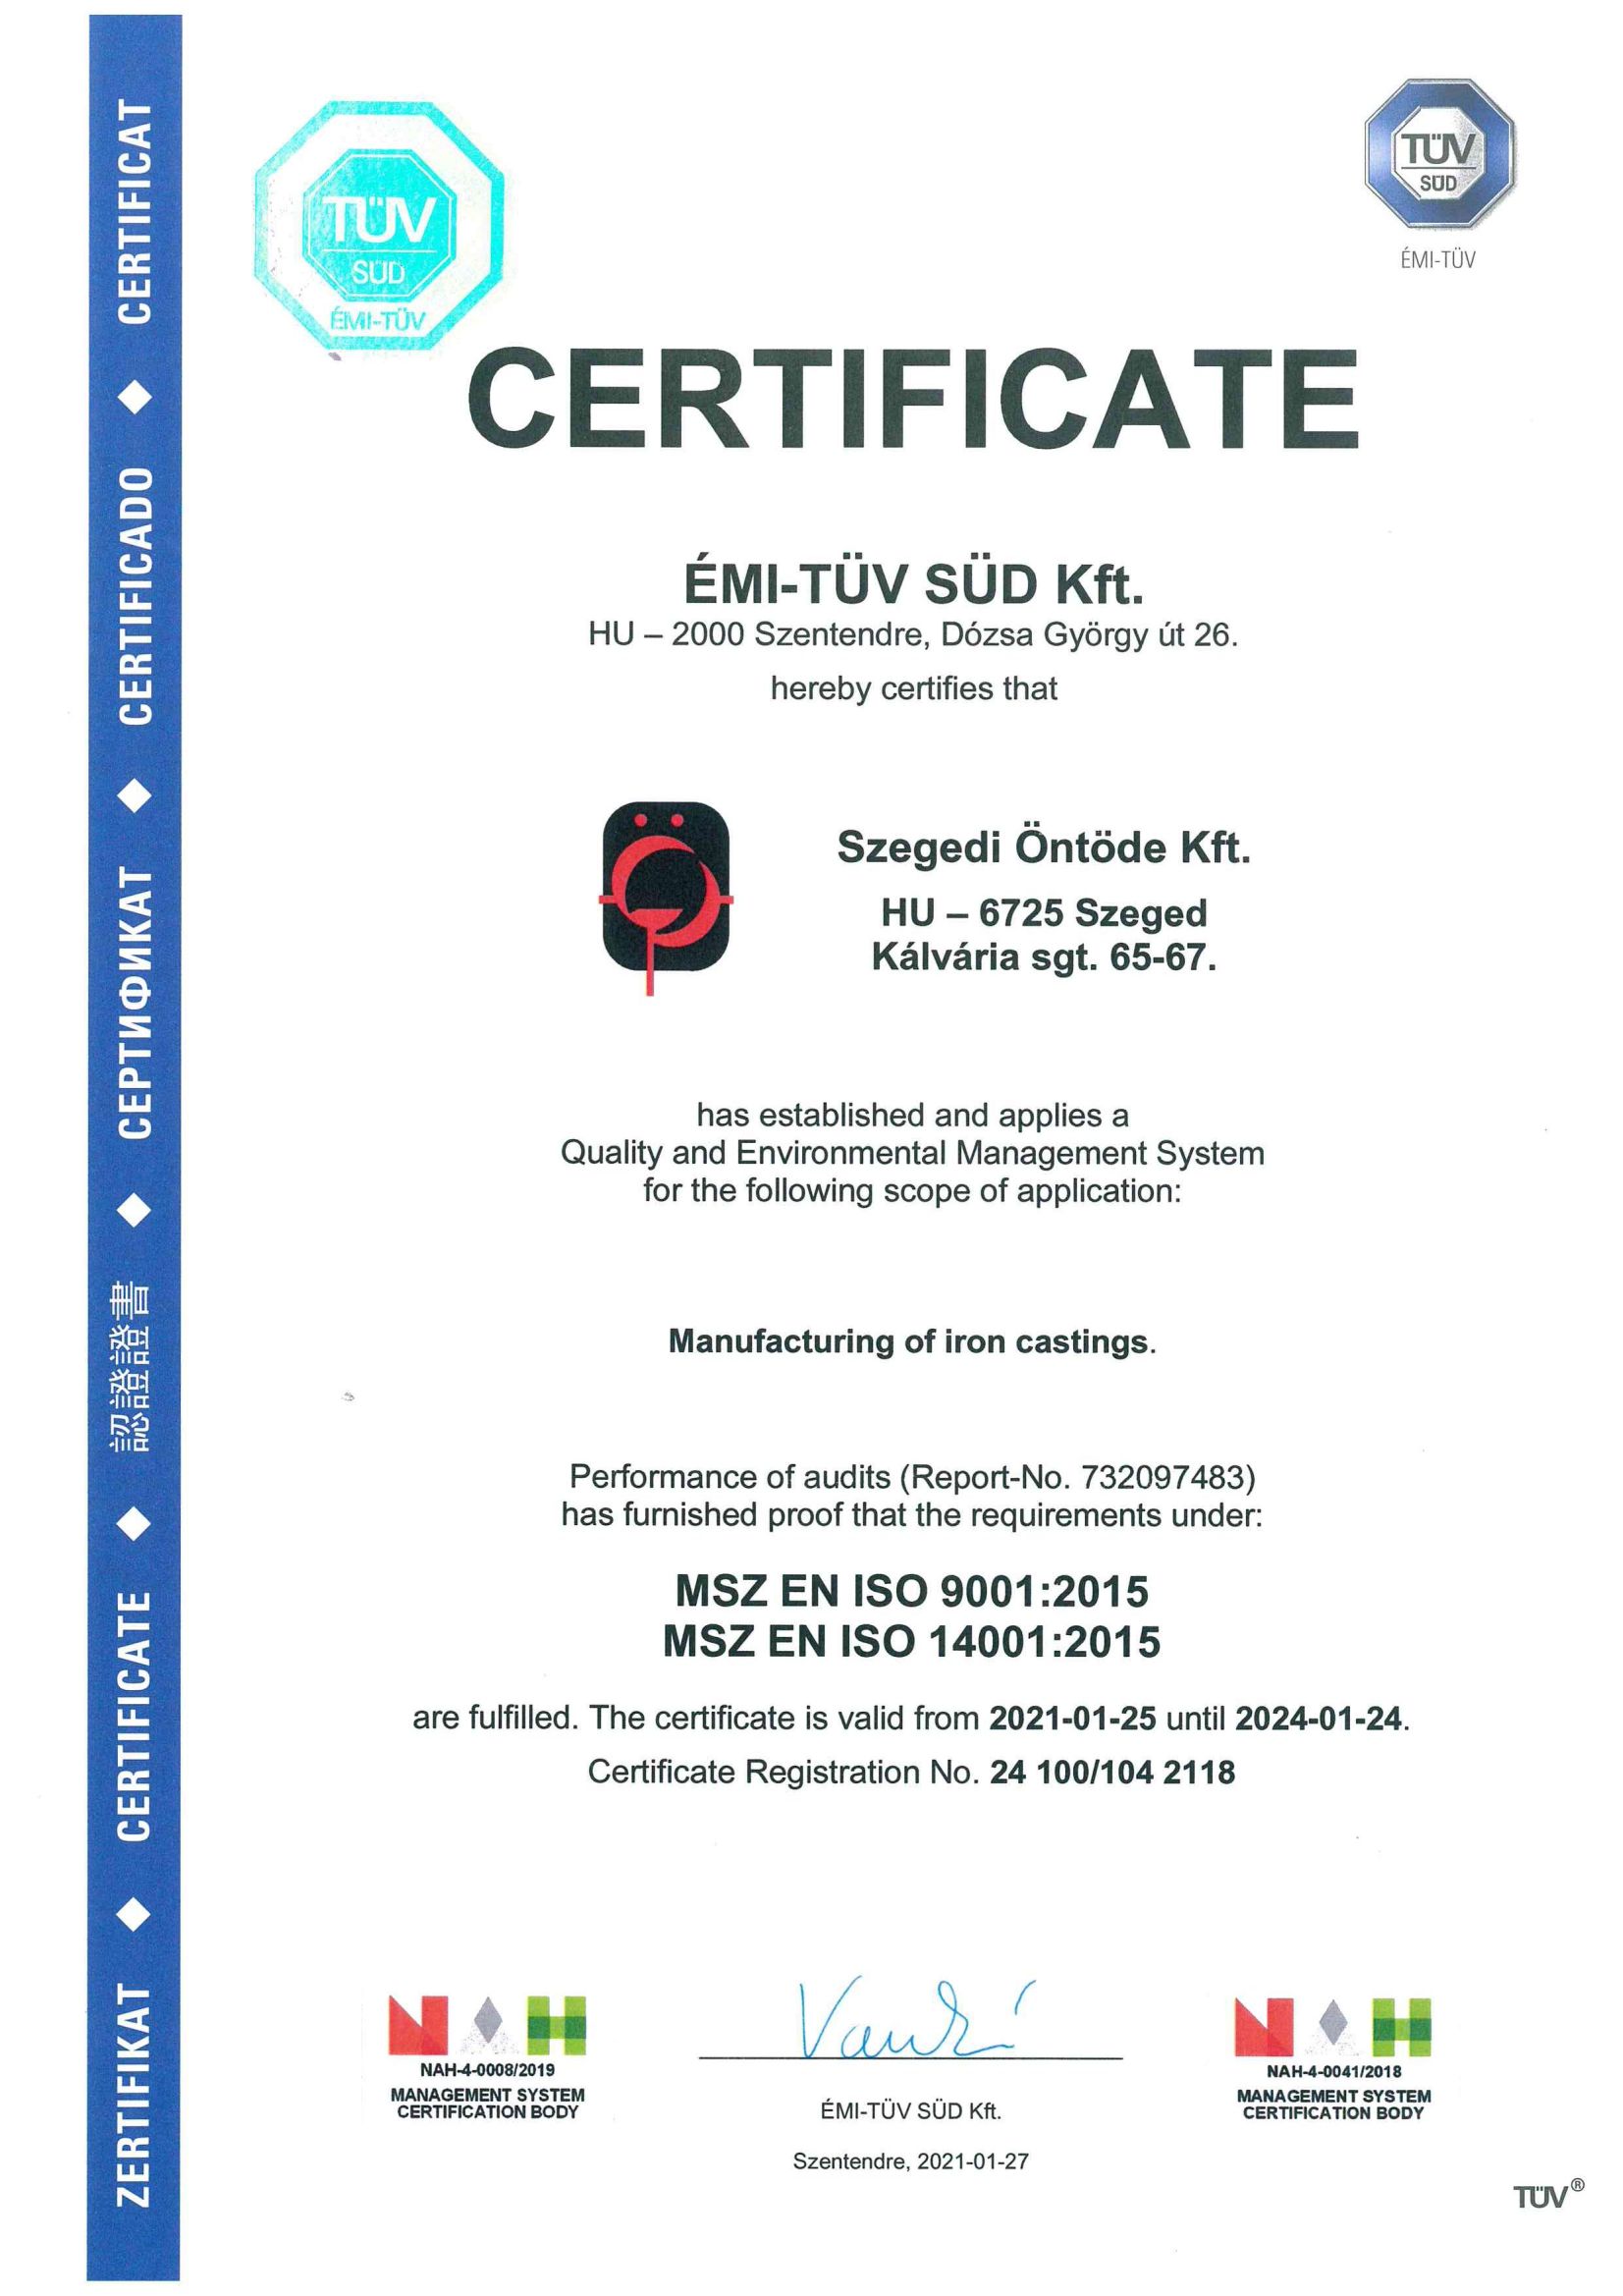 TÜV certification